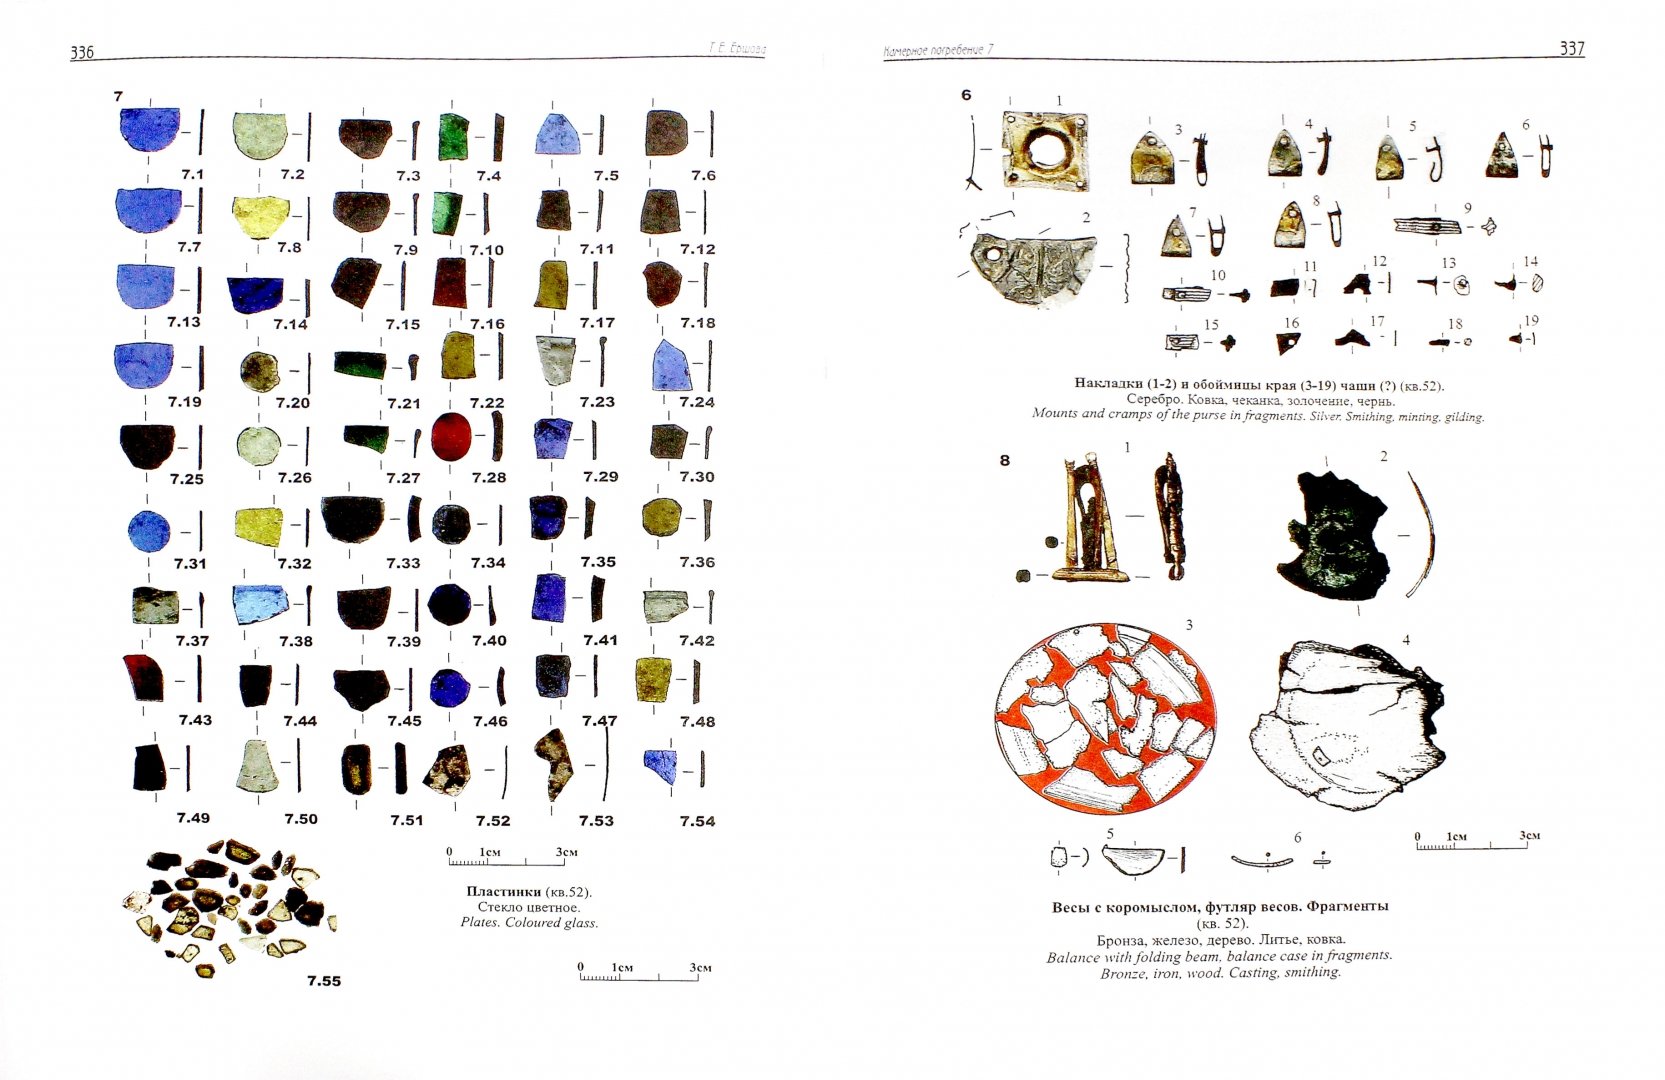 Иллюстрация 1 из 6 для Древнерусский некрополь Пскова X - начала XI века. Том 2 | Лабиринт - книги. Источник: Лабиринт